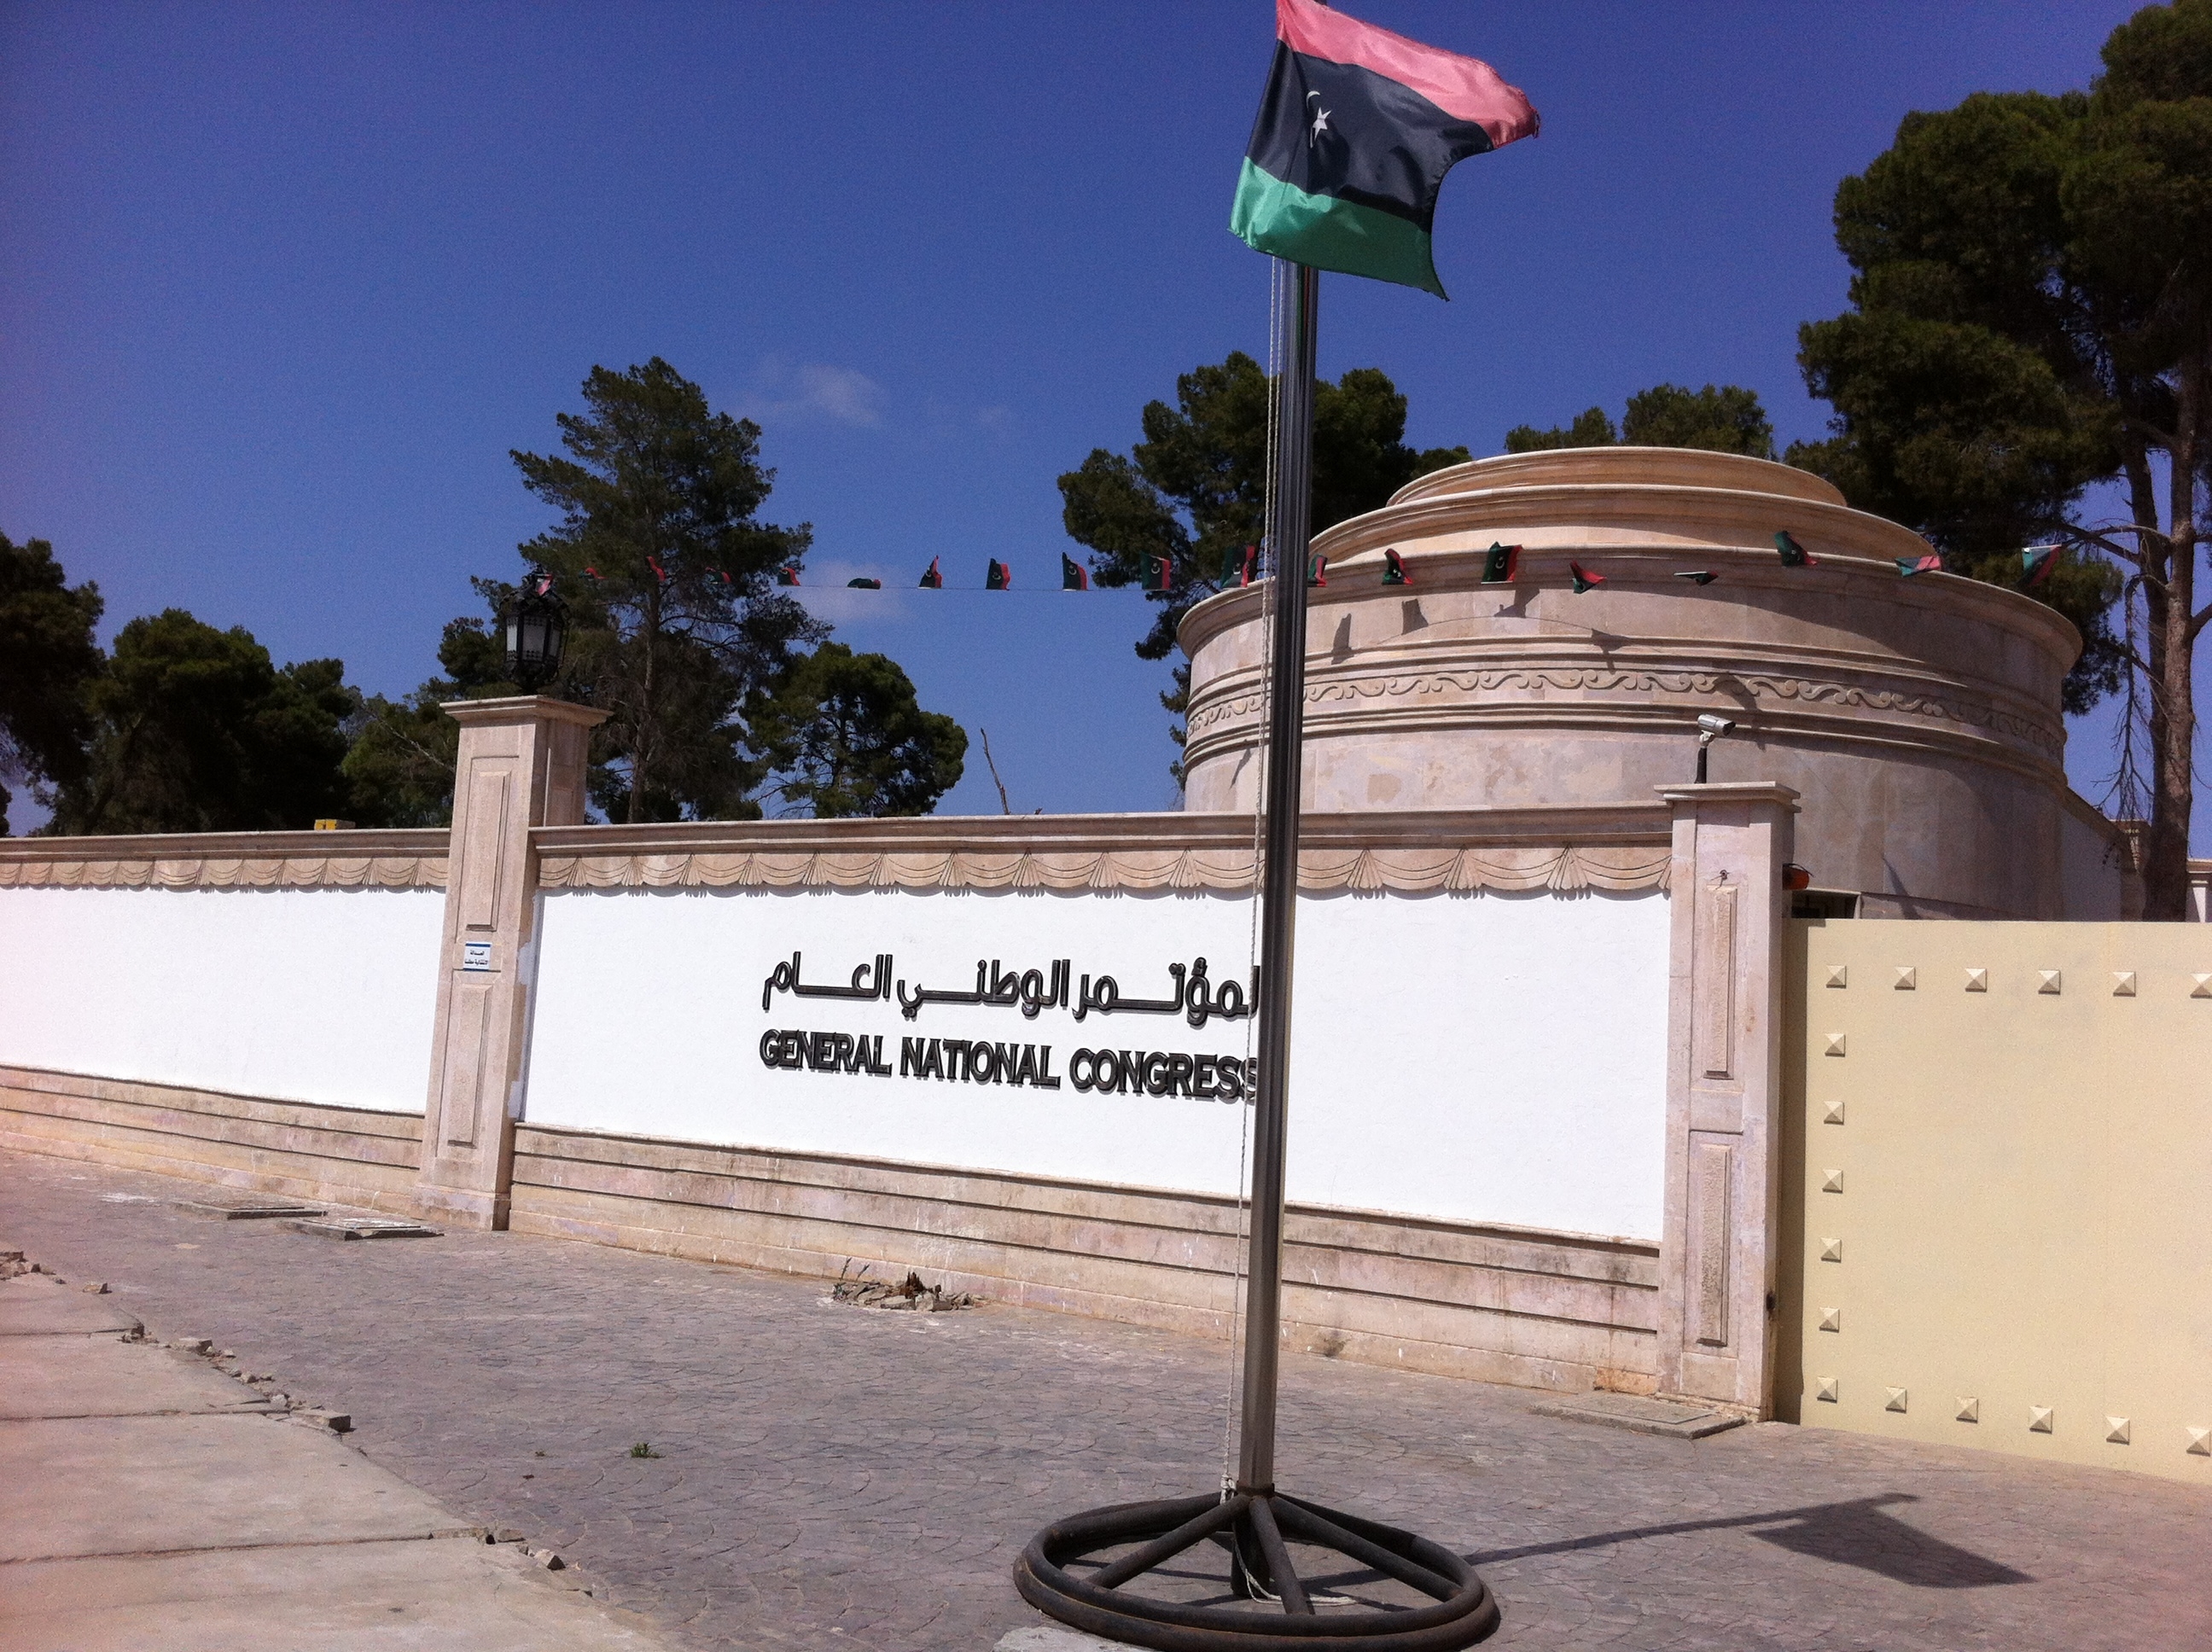 إطلاق نار قرب مقر المؤتمر الوطني العام يعيد التوتر إلى طرابلس